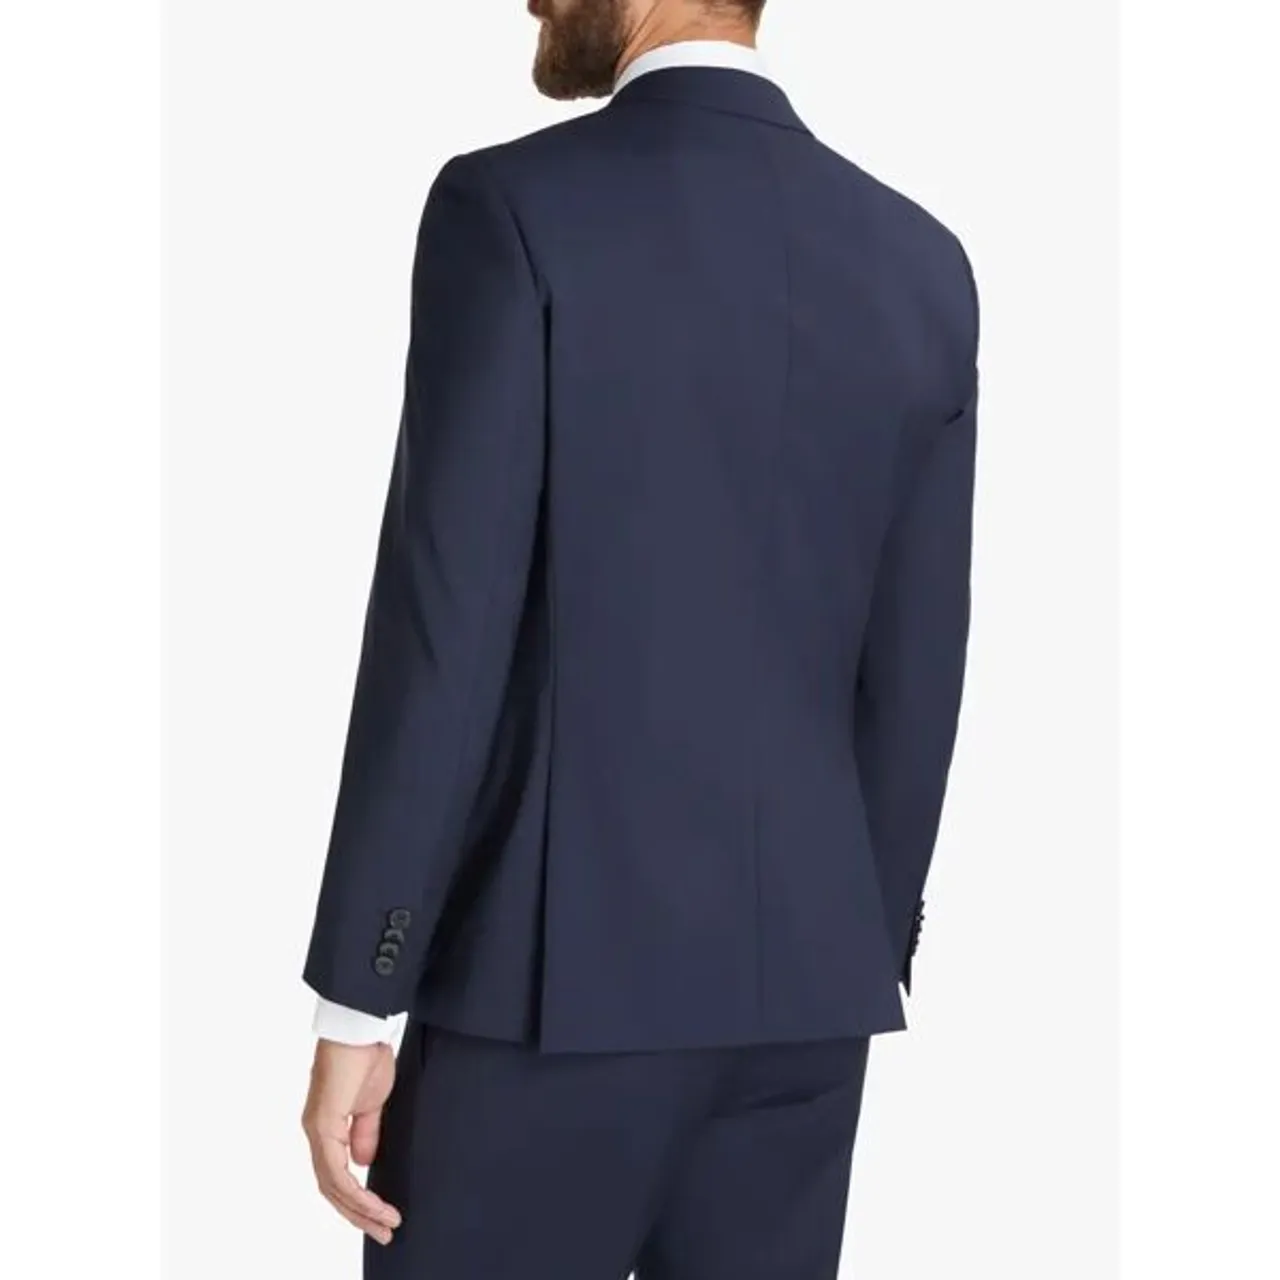 Hugo Boss Virgin Wool Slim Fit Suit Jacket, Dark Blue - Dark Blue - Male